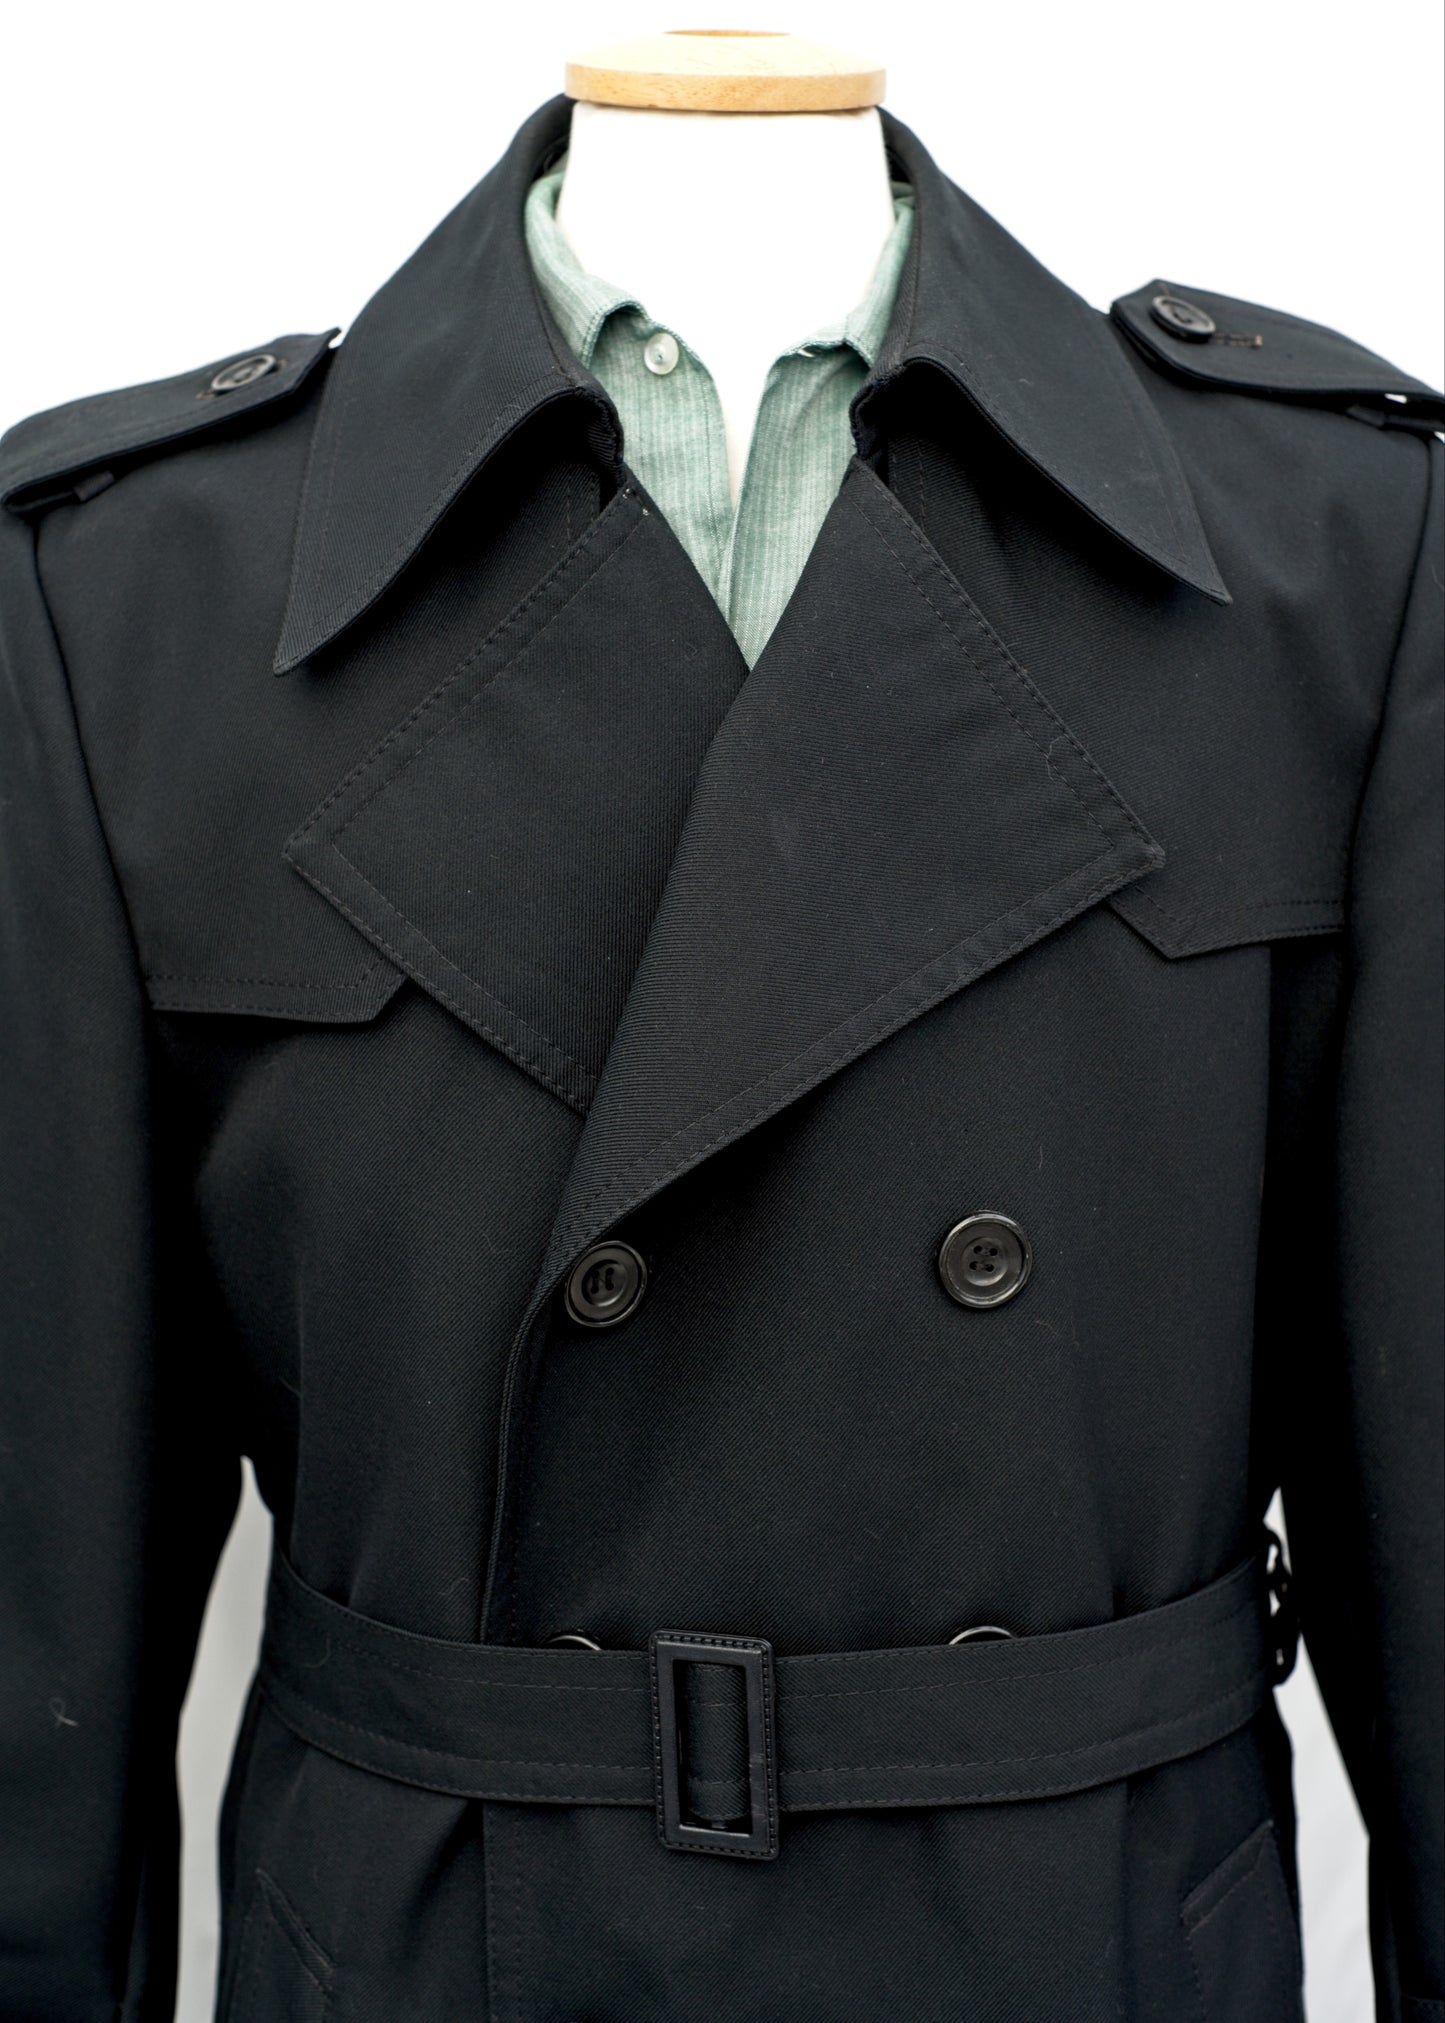 Men's Vintage 70s Black Trench Coat Macintosh • Hepworths